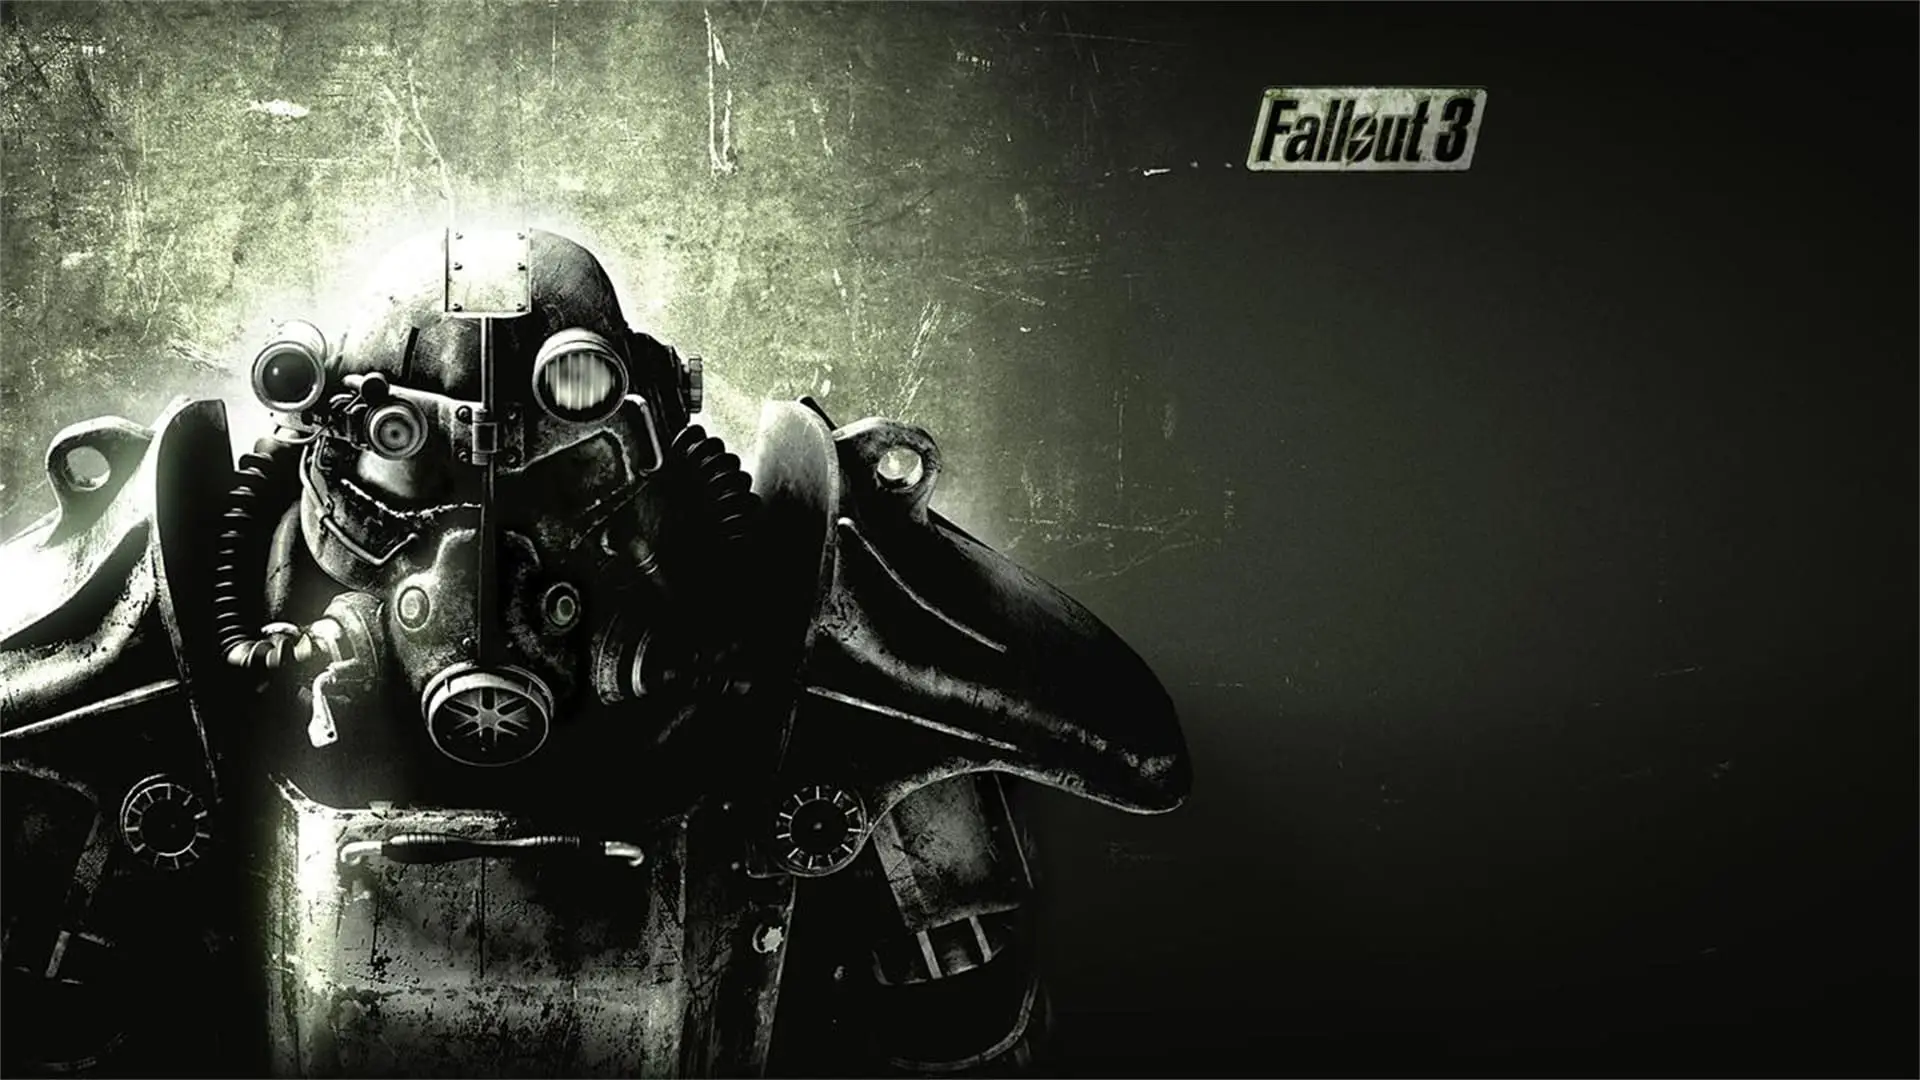 La duración de Fallout 3: información, análisis y consejos